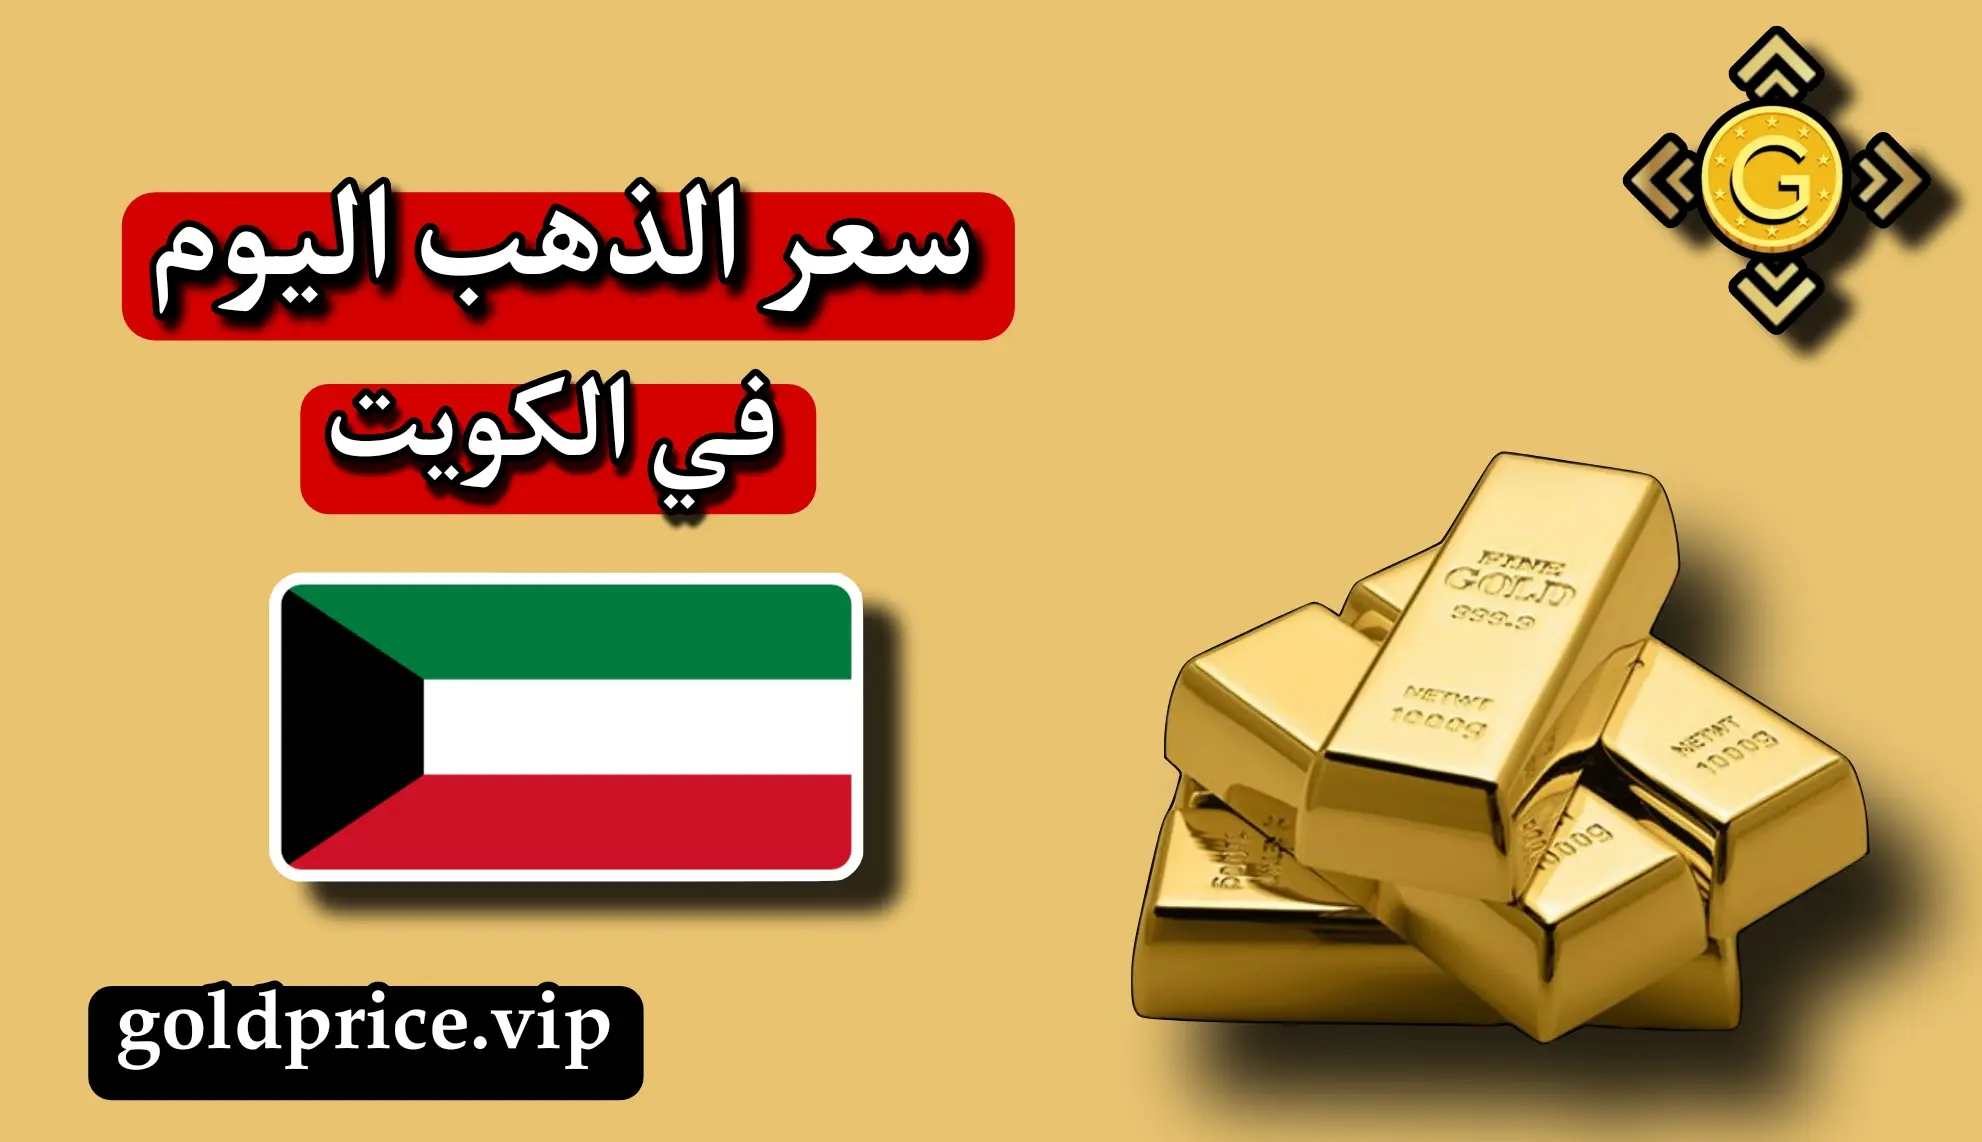 سعر الذهب اليوم في الكويت الان